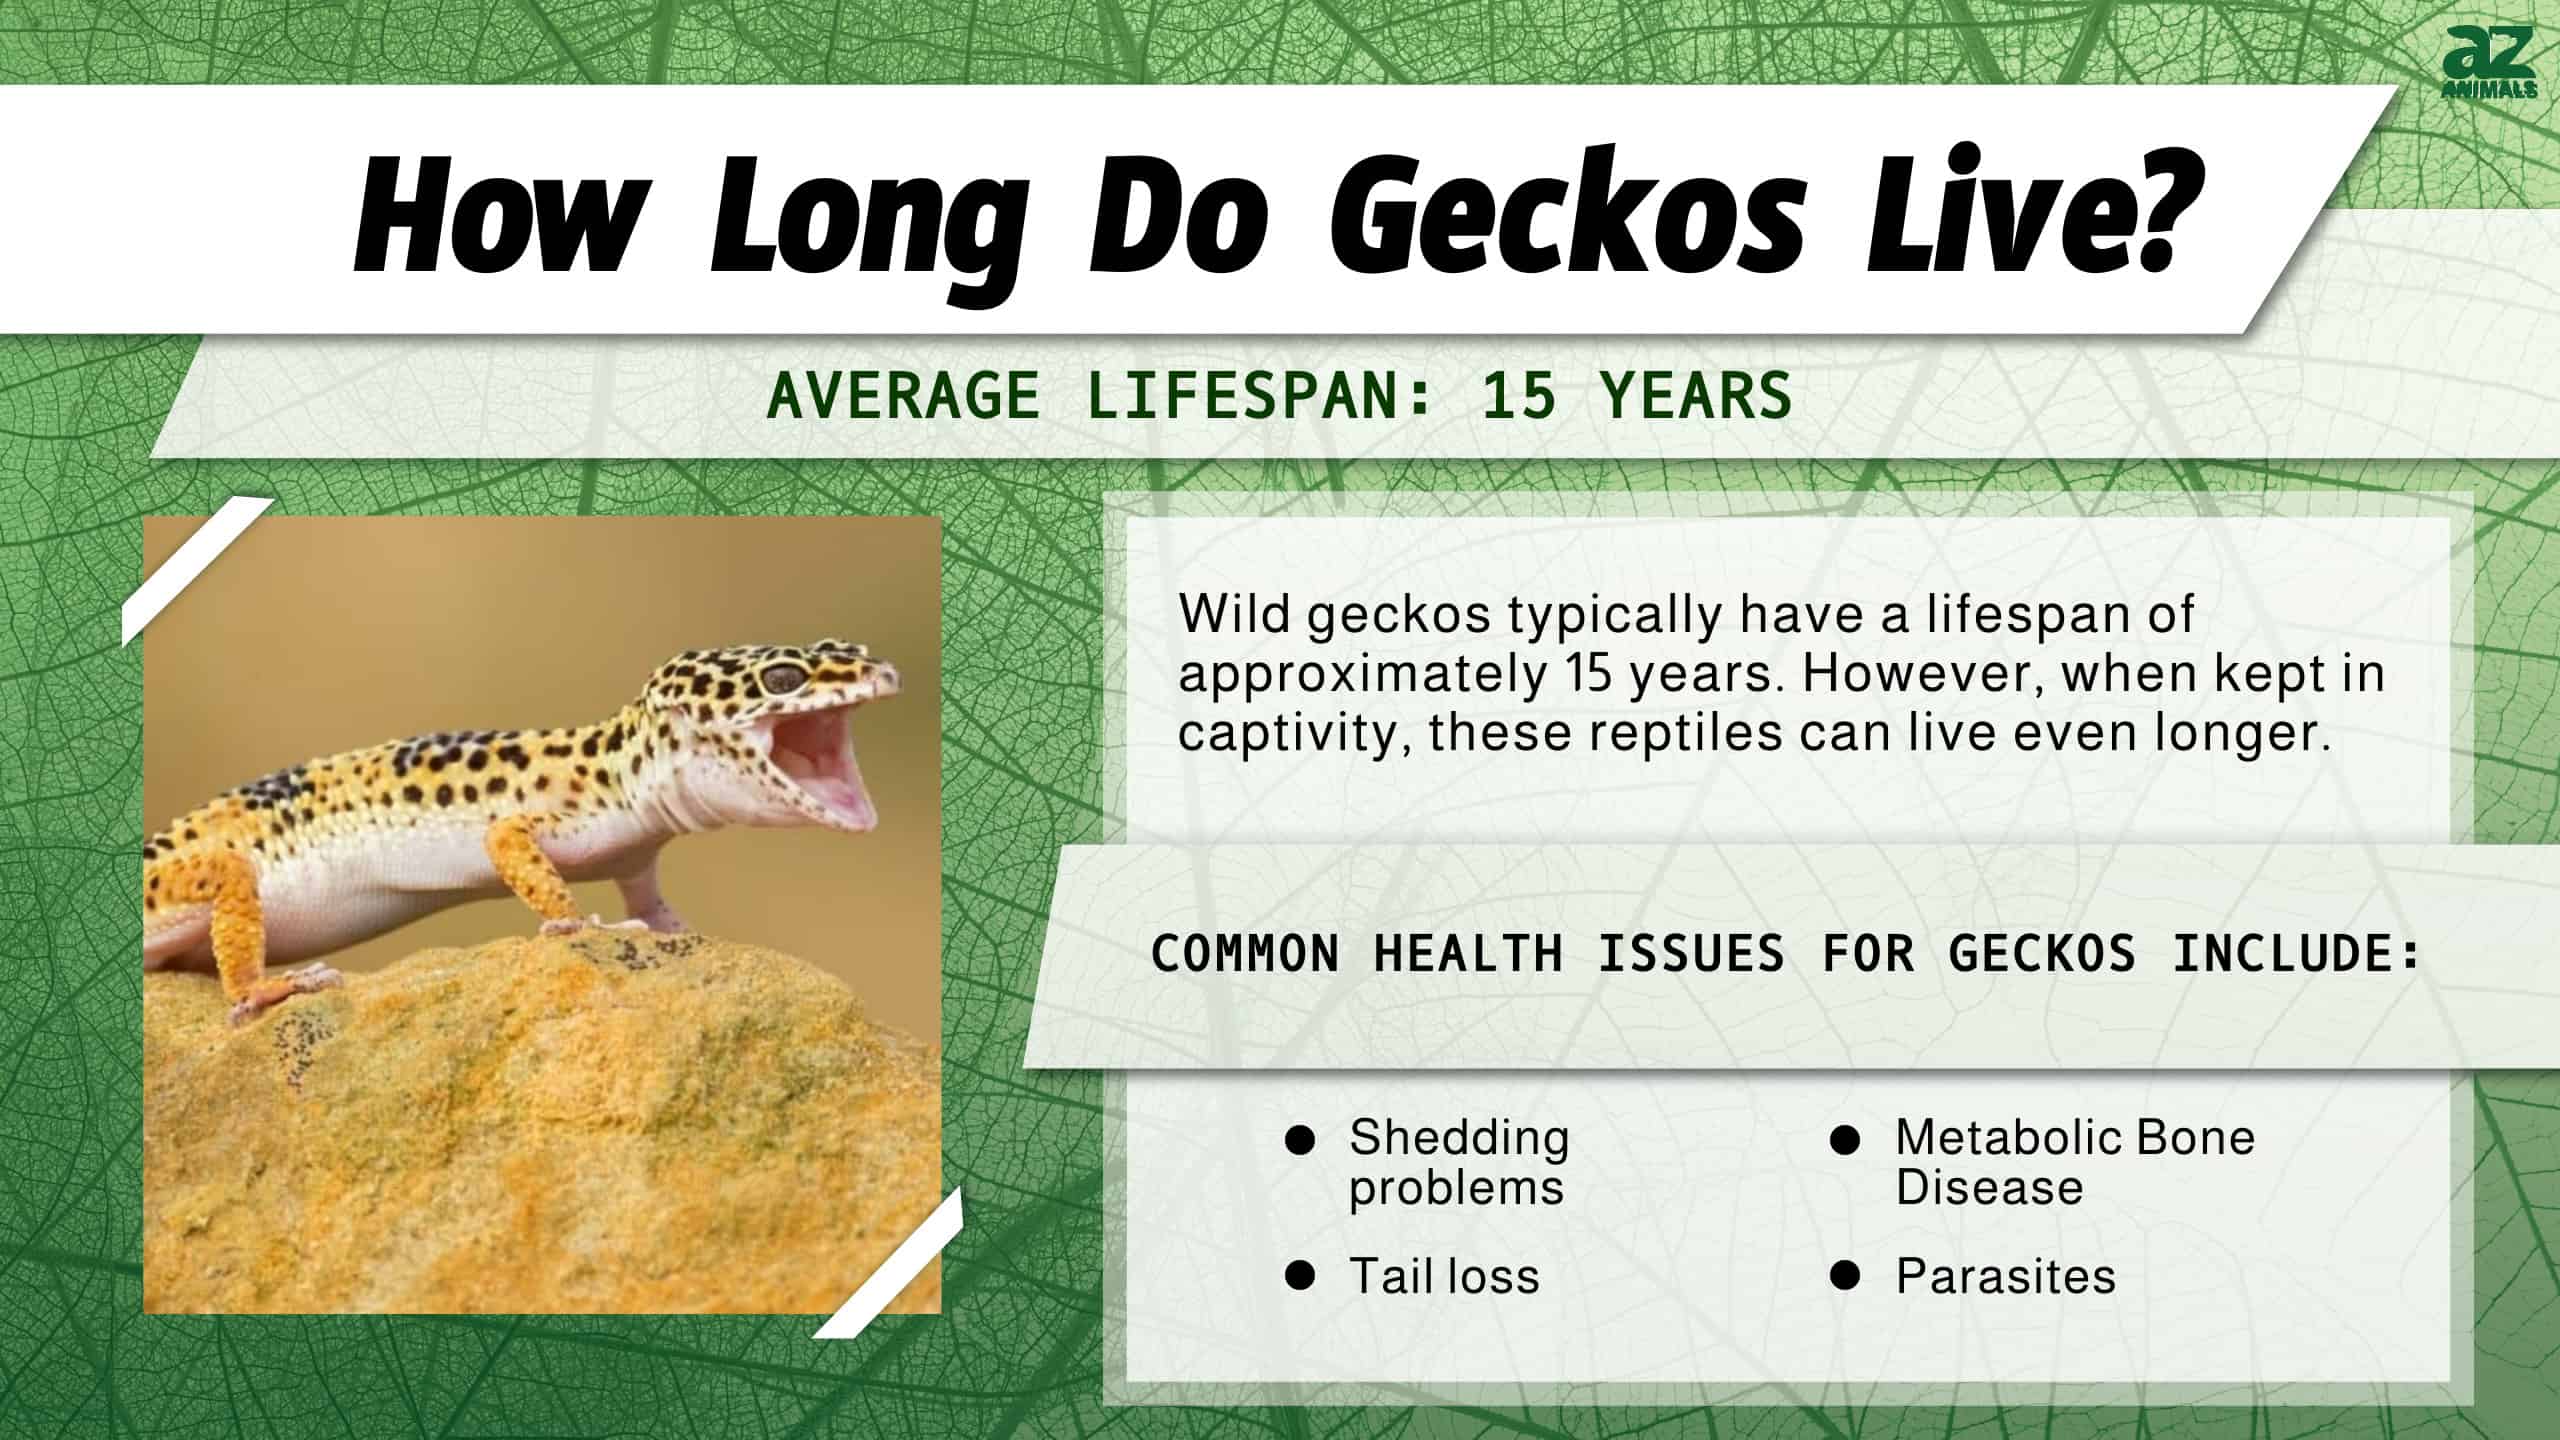 How Long Do Geckos Live? infographic